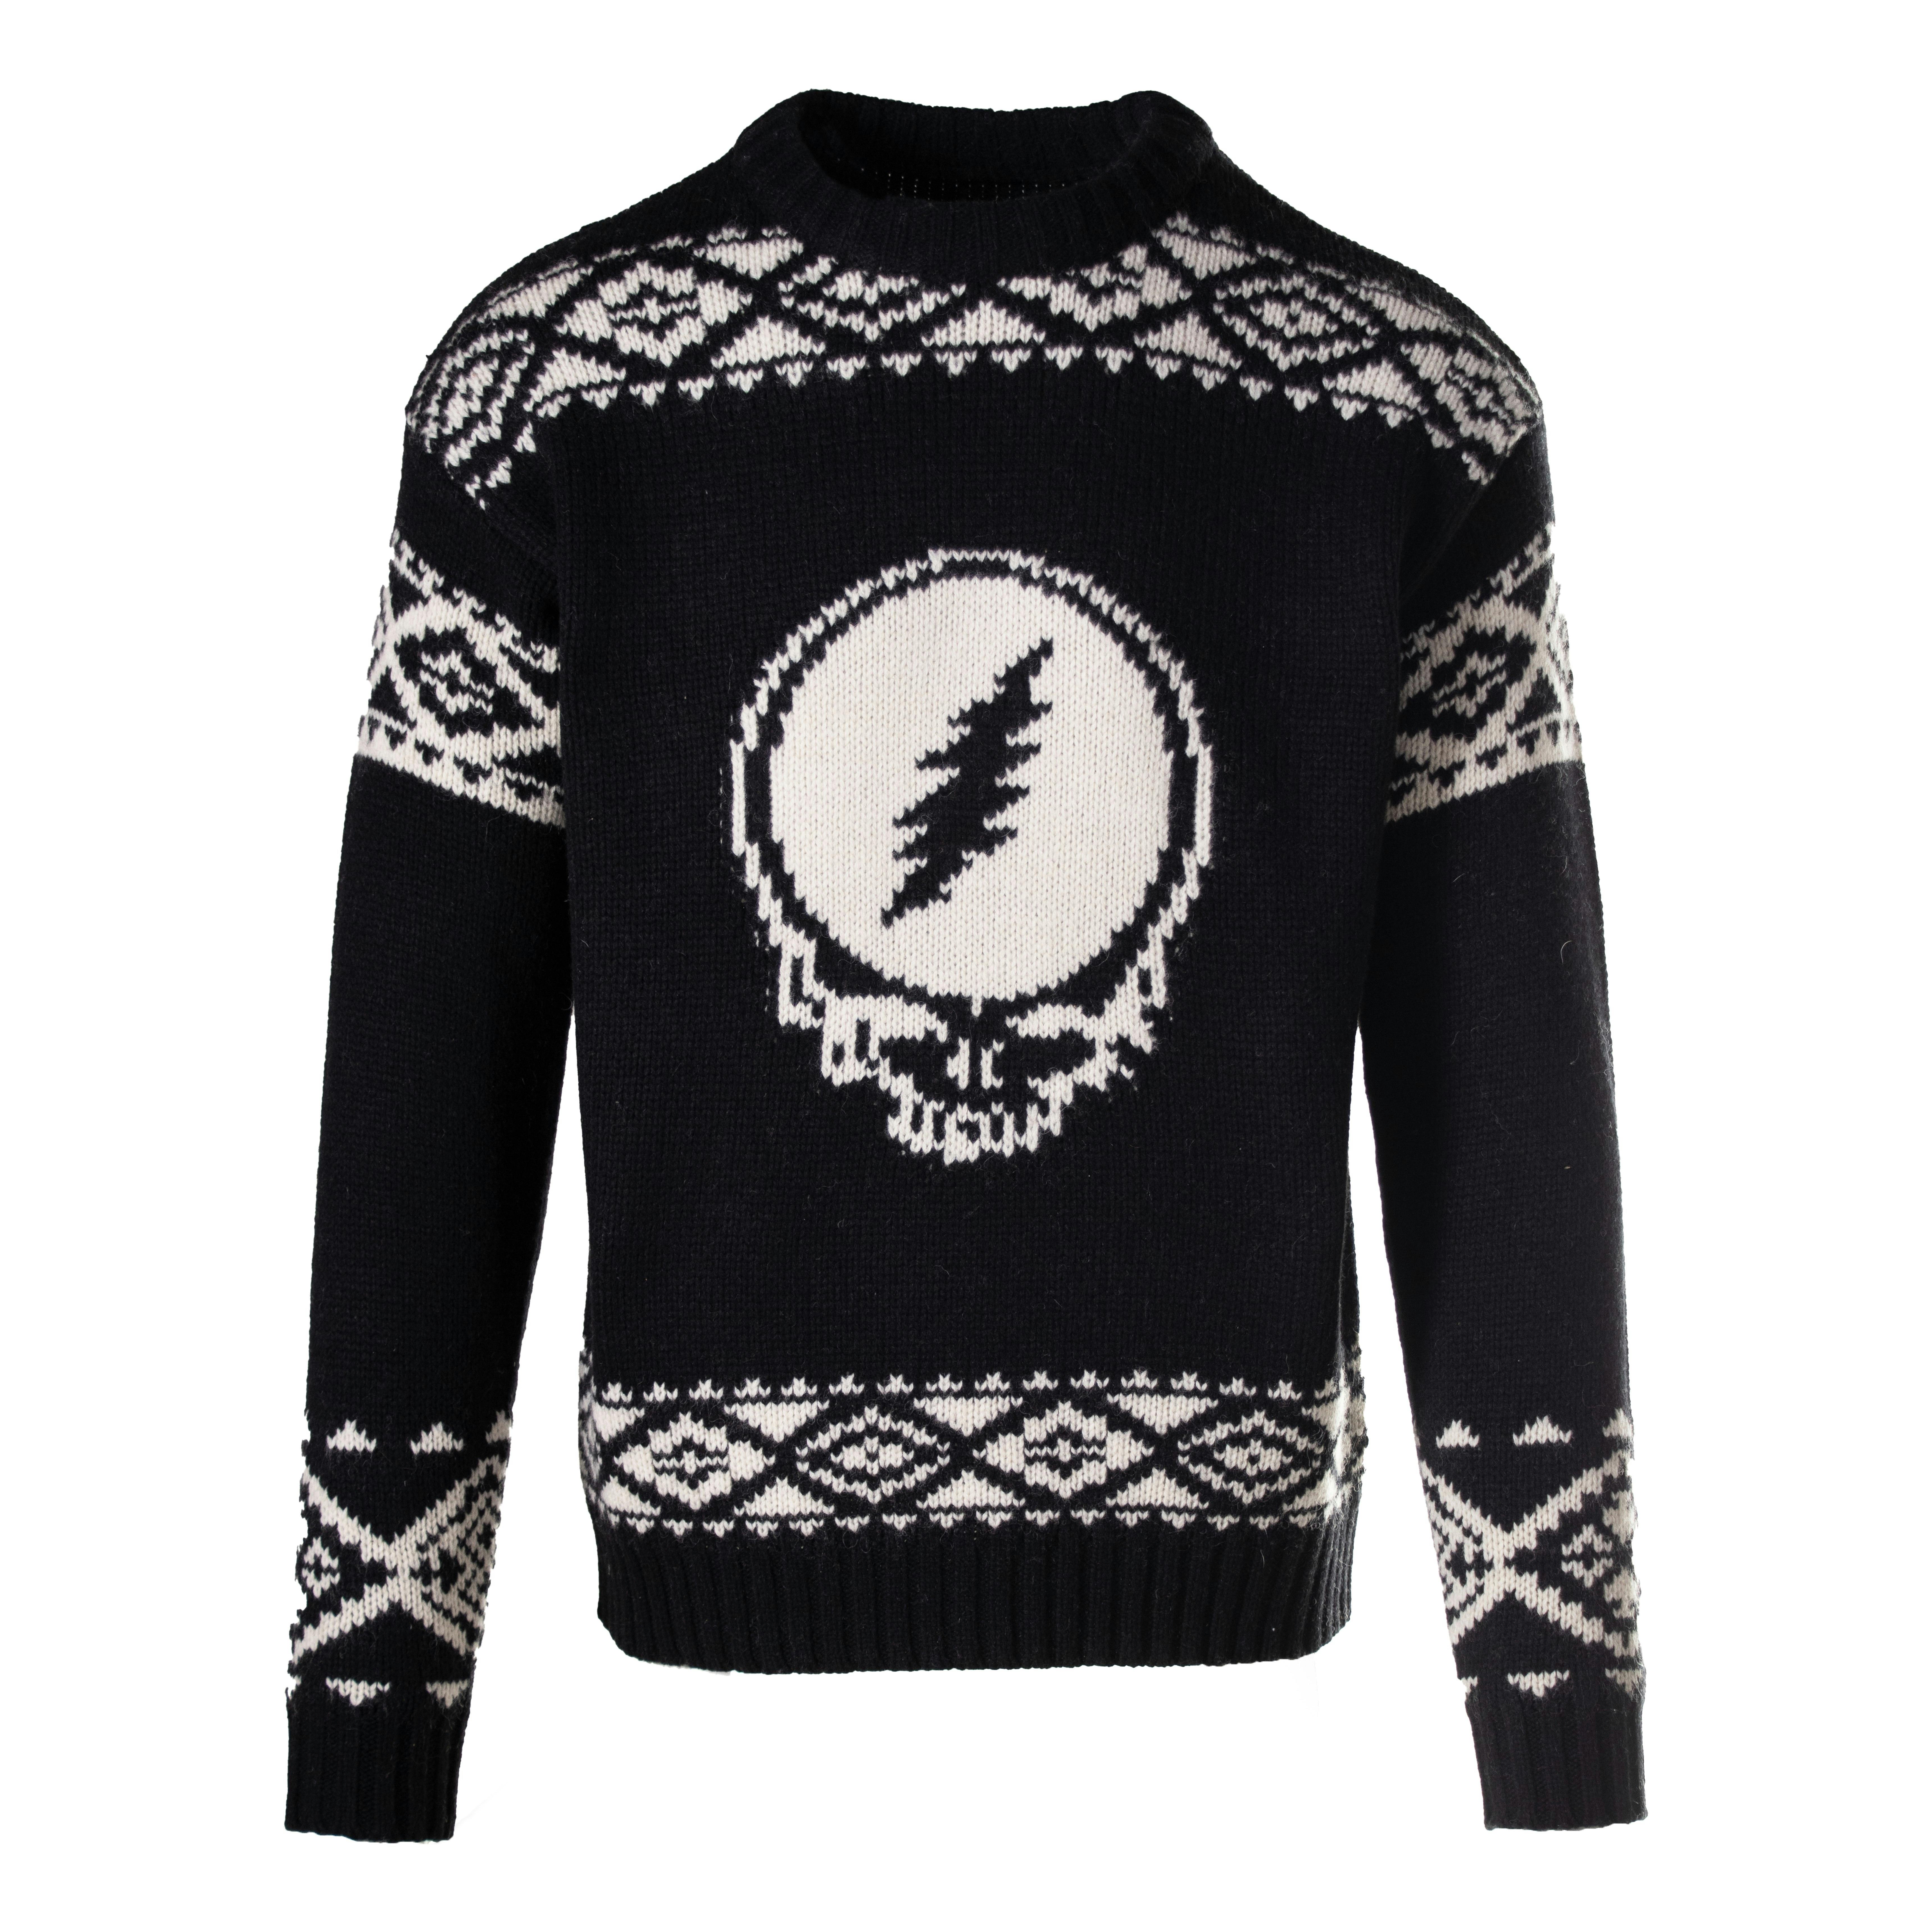 Grateful Dead Fair Isle Sweater